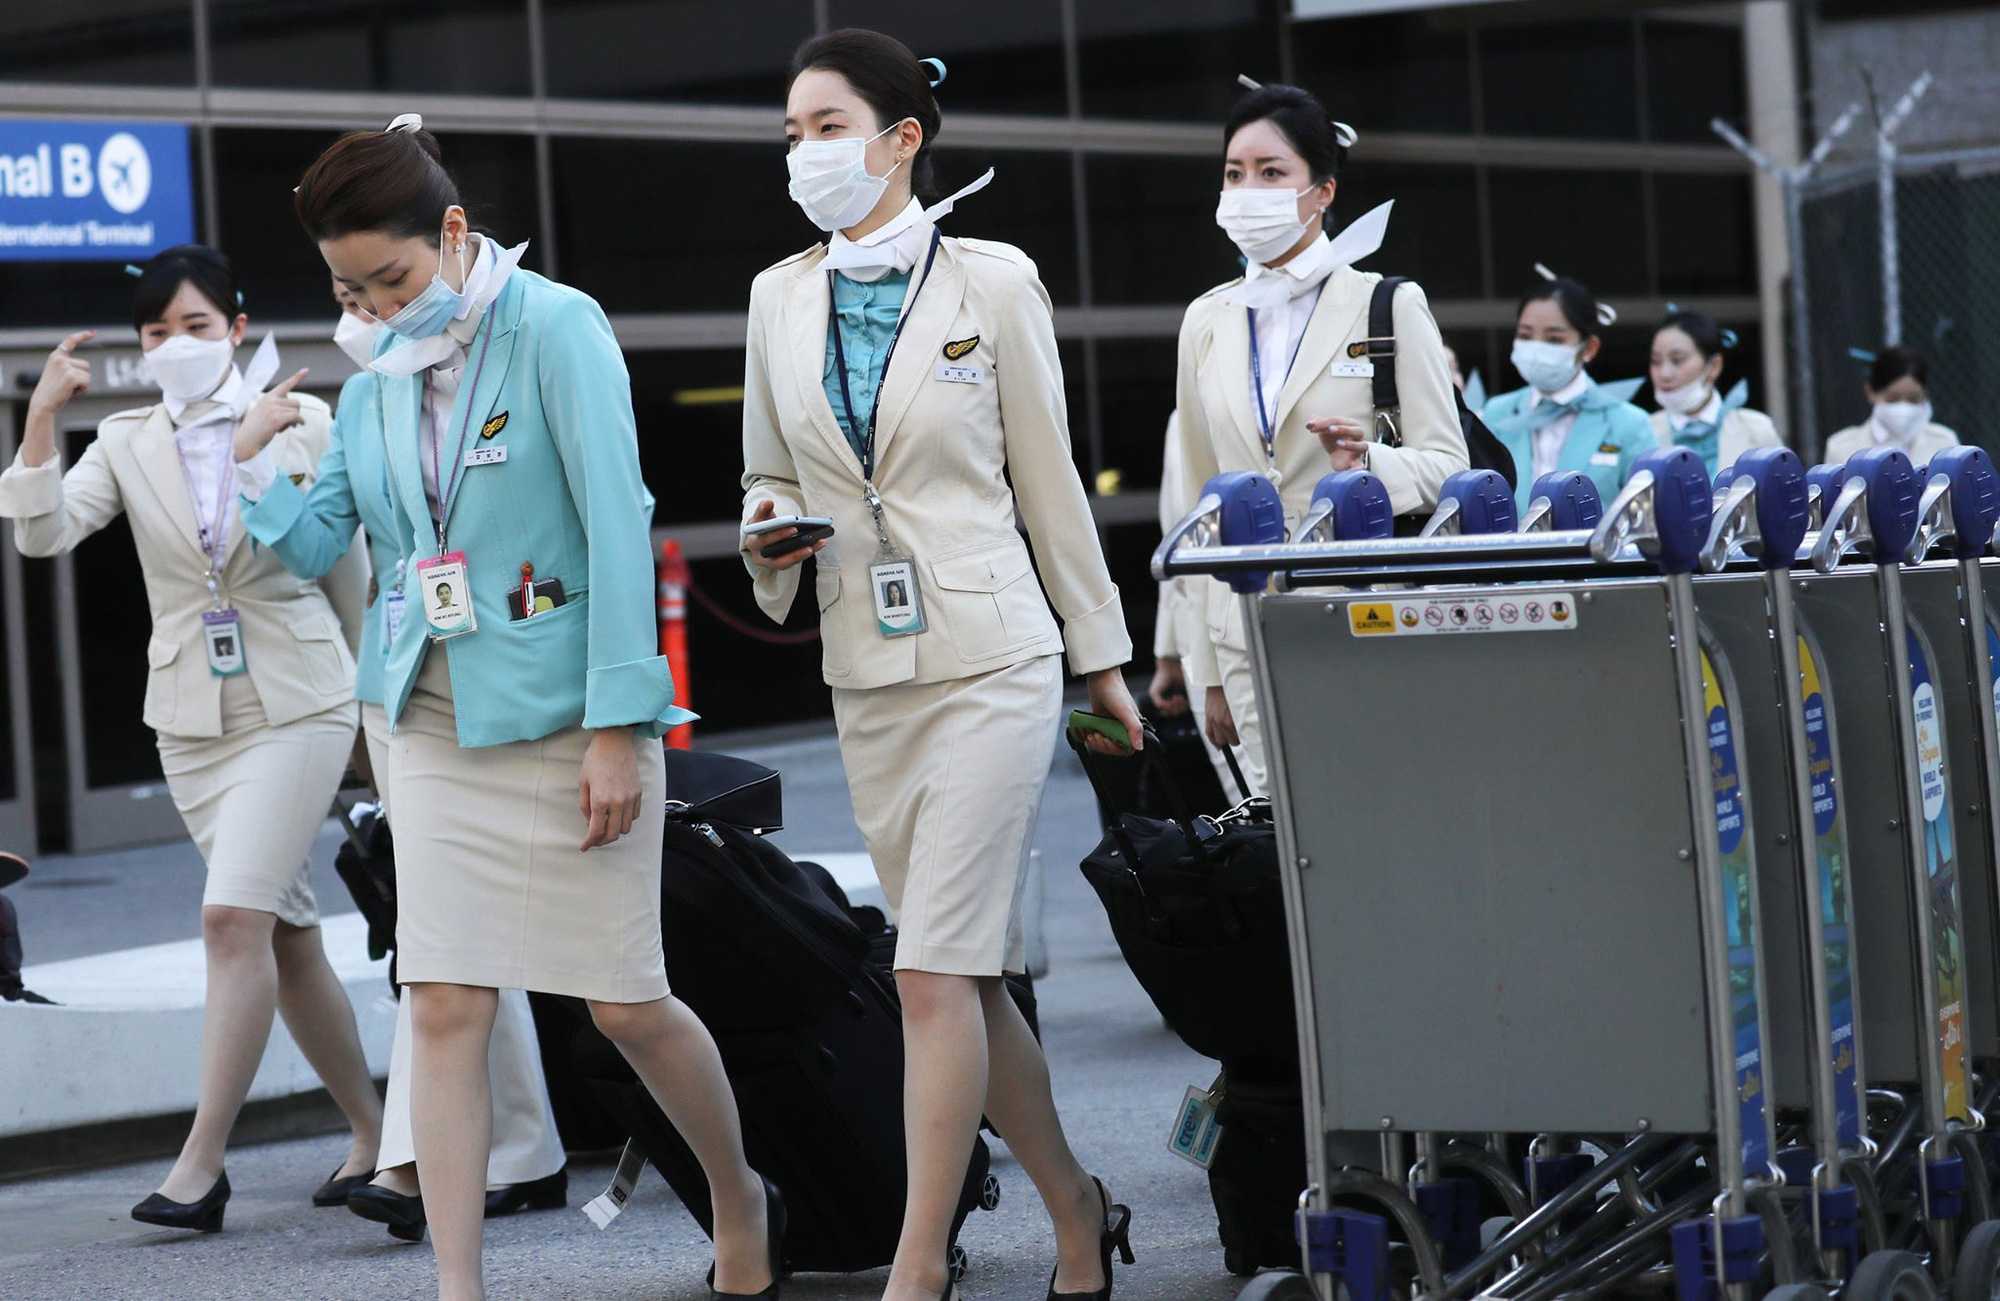 Đồng phục của tiếp viên hàng không Hàn Quốc: Đa phần đều nhã nhặn nhưng đột phá nhất thì phải là hãng cuối - Ảnh 2.